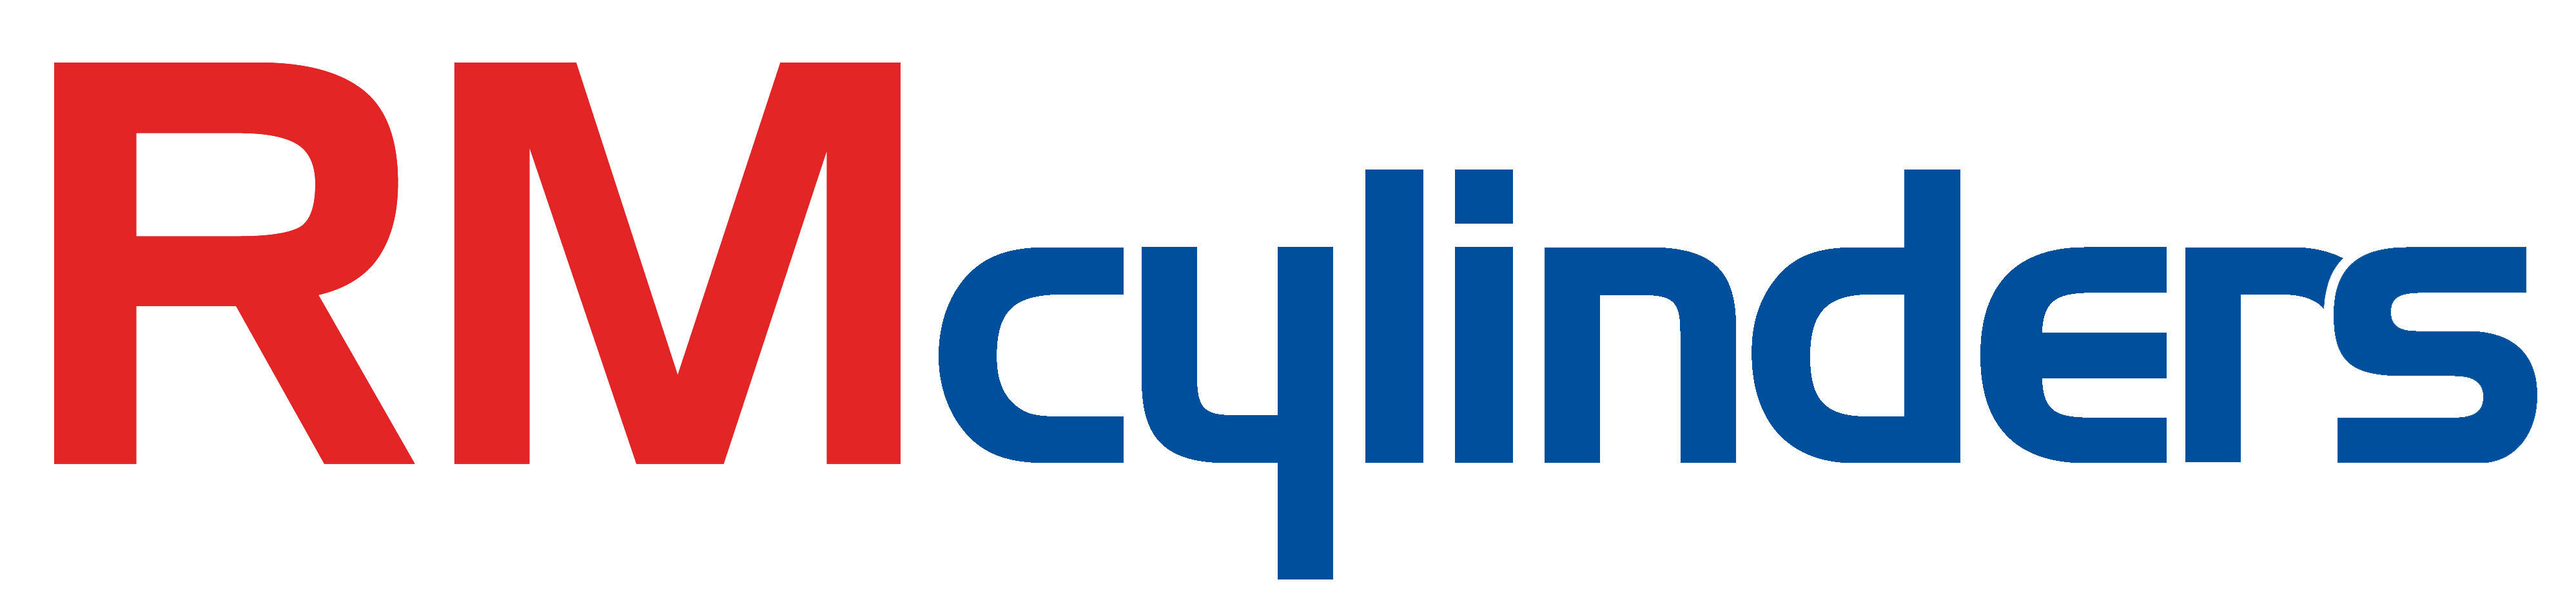 Blue Cylinder Logo - Direct Prostel Cylinder